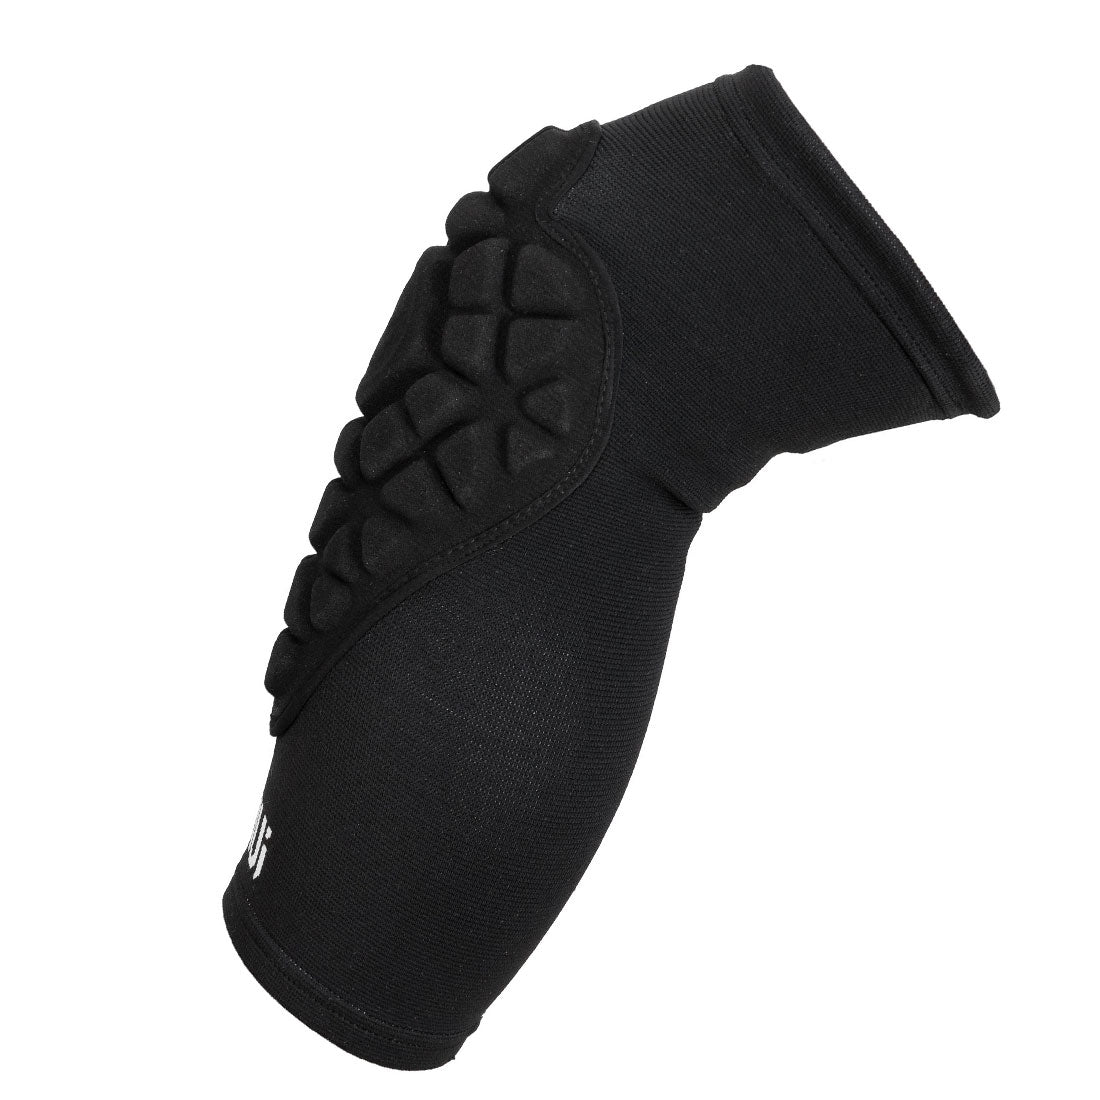 Ennui Shock Sleeve PRO Knee Gasket Protective Gear